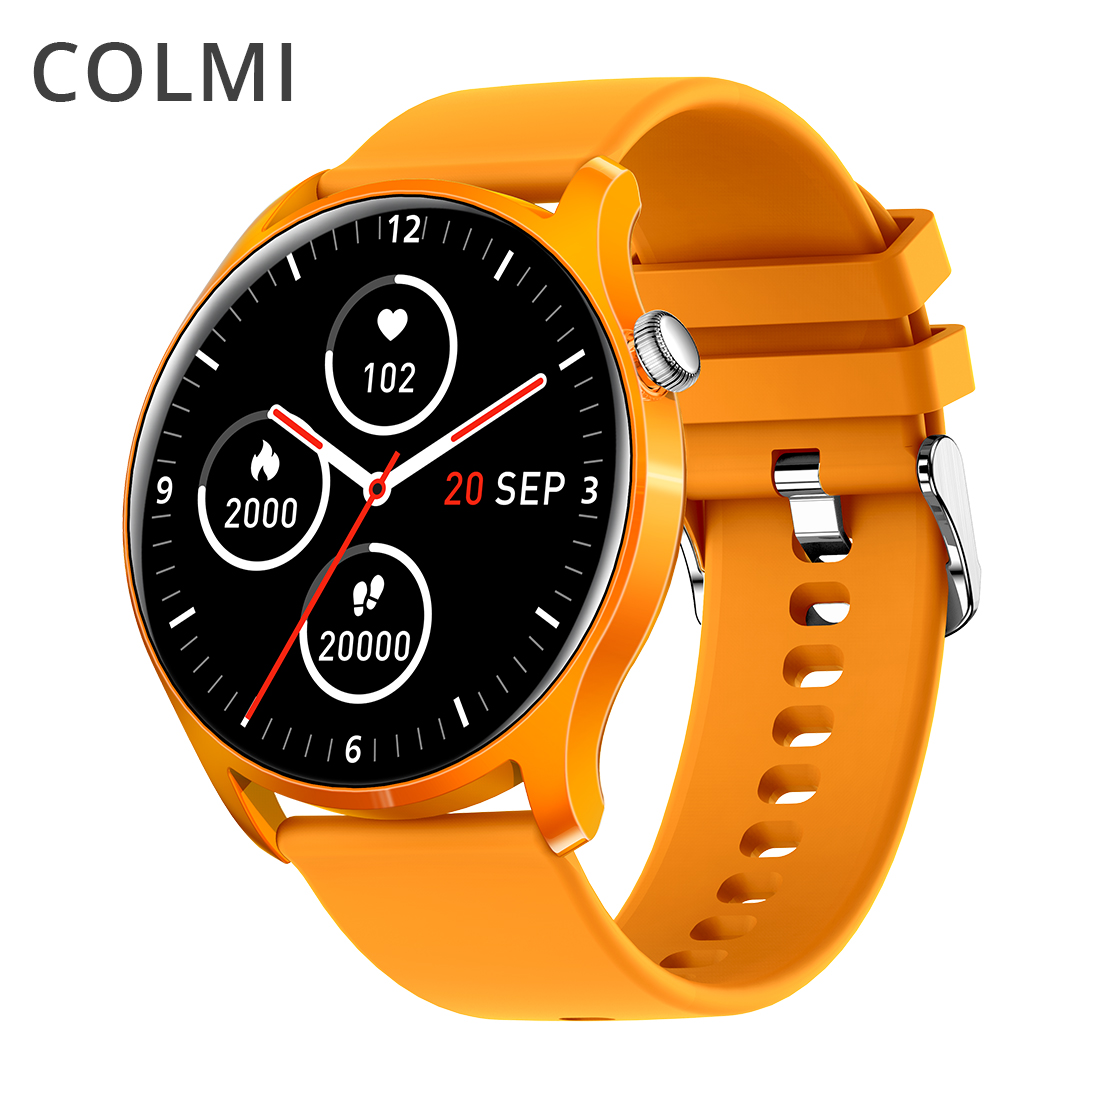 COLMI SKY 8 Smart Watch Haweenka IP67 Biyaha aan Biyaha lahayn ee Bluetooth-ka Smartwatch Ragga ee Android i (6)